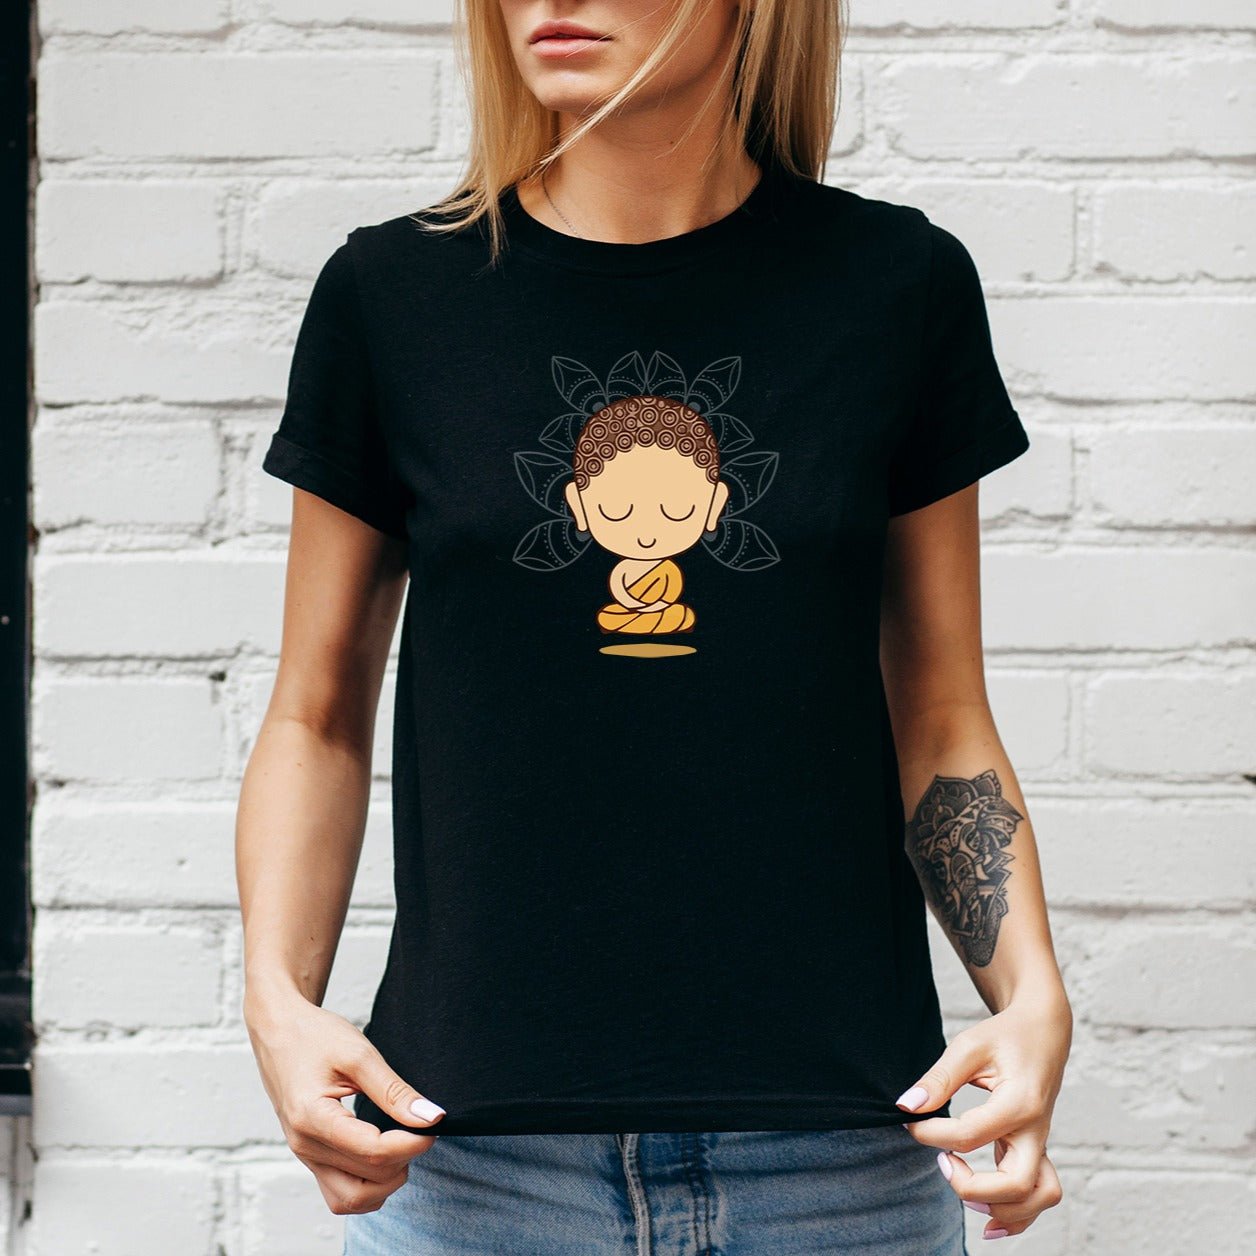 Buddha Women's T-shirt - Ken Adams